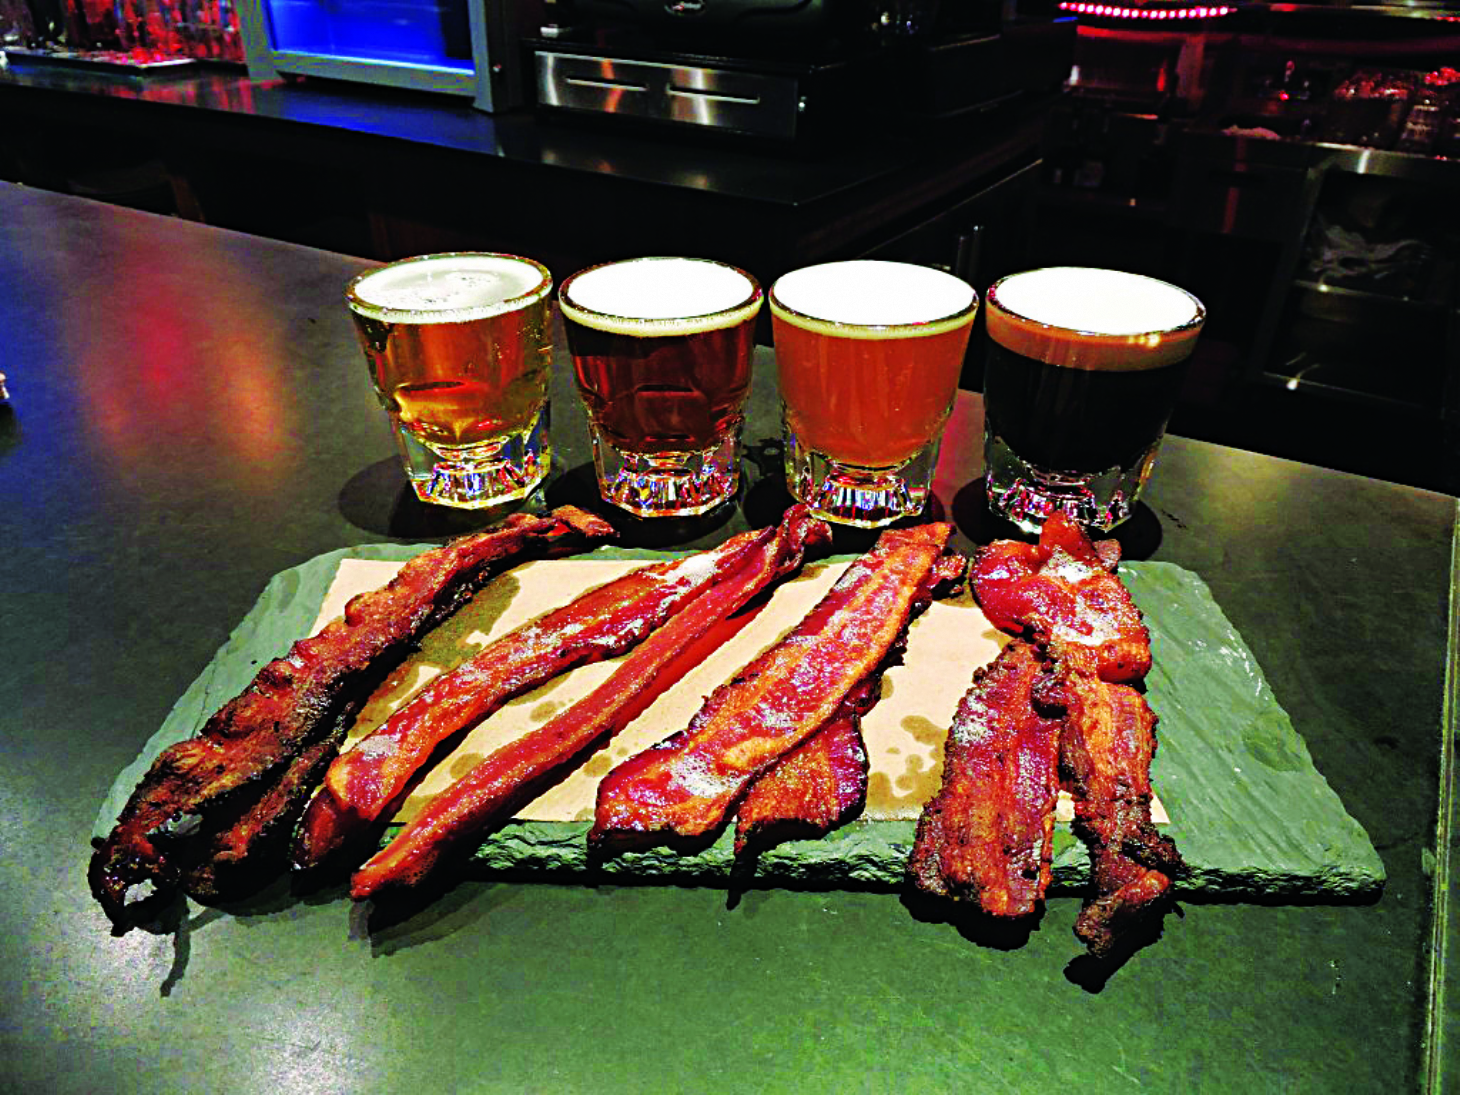 Festival do Bacon, Cerveja Artesanal e Churros em Santos | Jornal da Orla